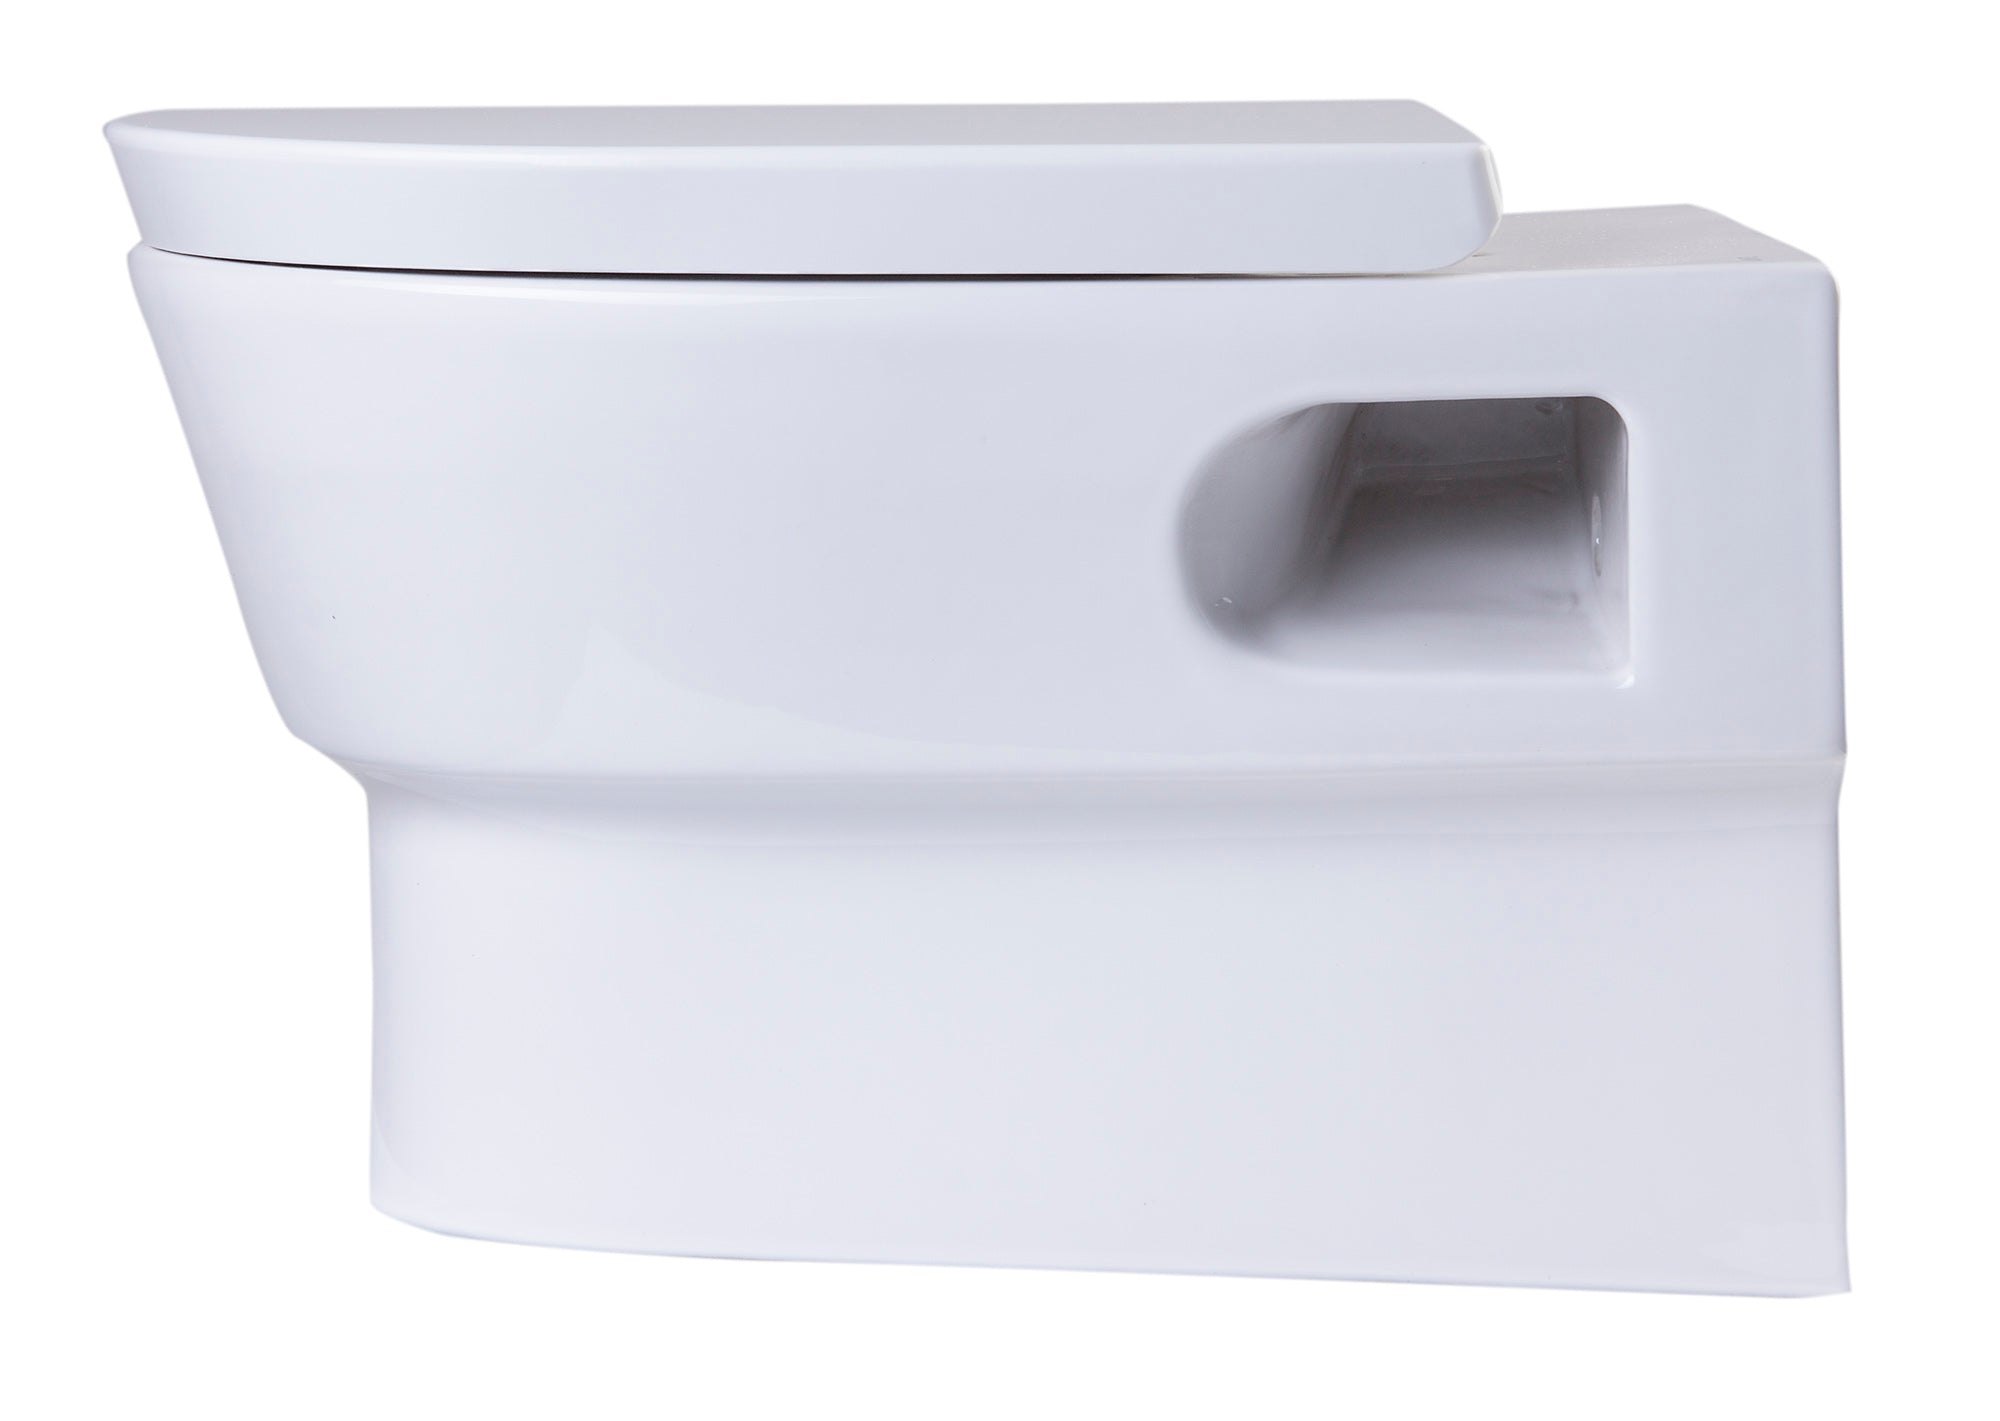 EAGO WD332 Toilet Bowl Modern Wall Mounted Dual-Flush White Ceramic